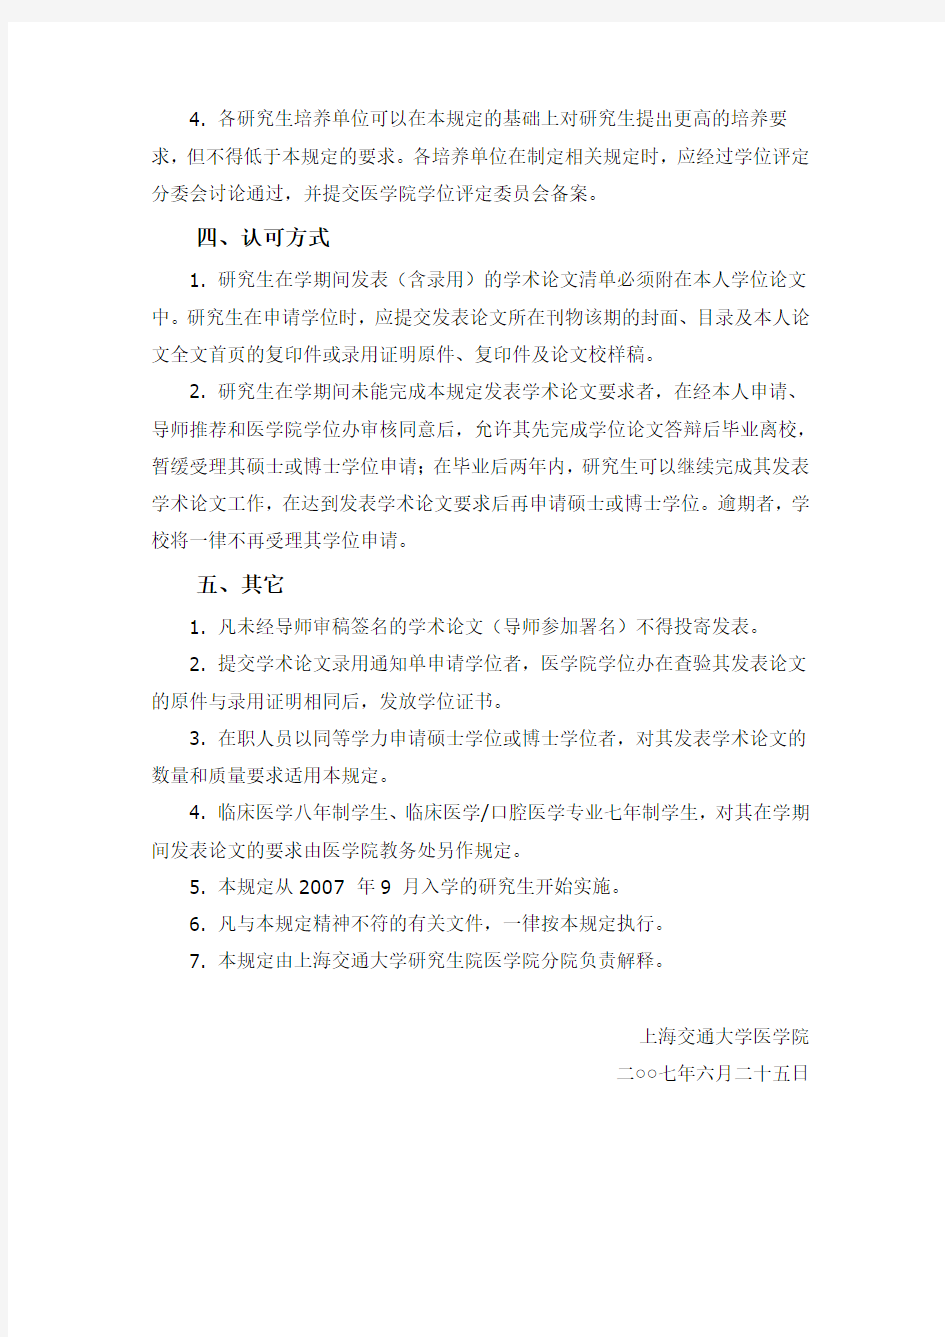 上海交通大学医学院关于研究生在学期间发表学术论文要求的规定